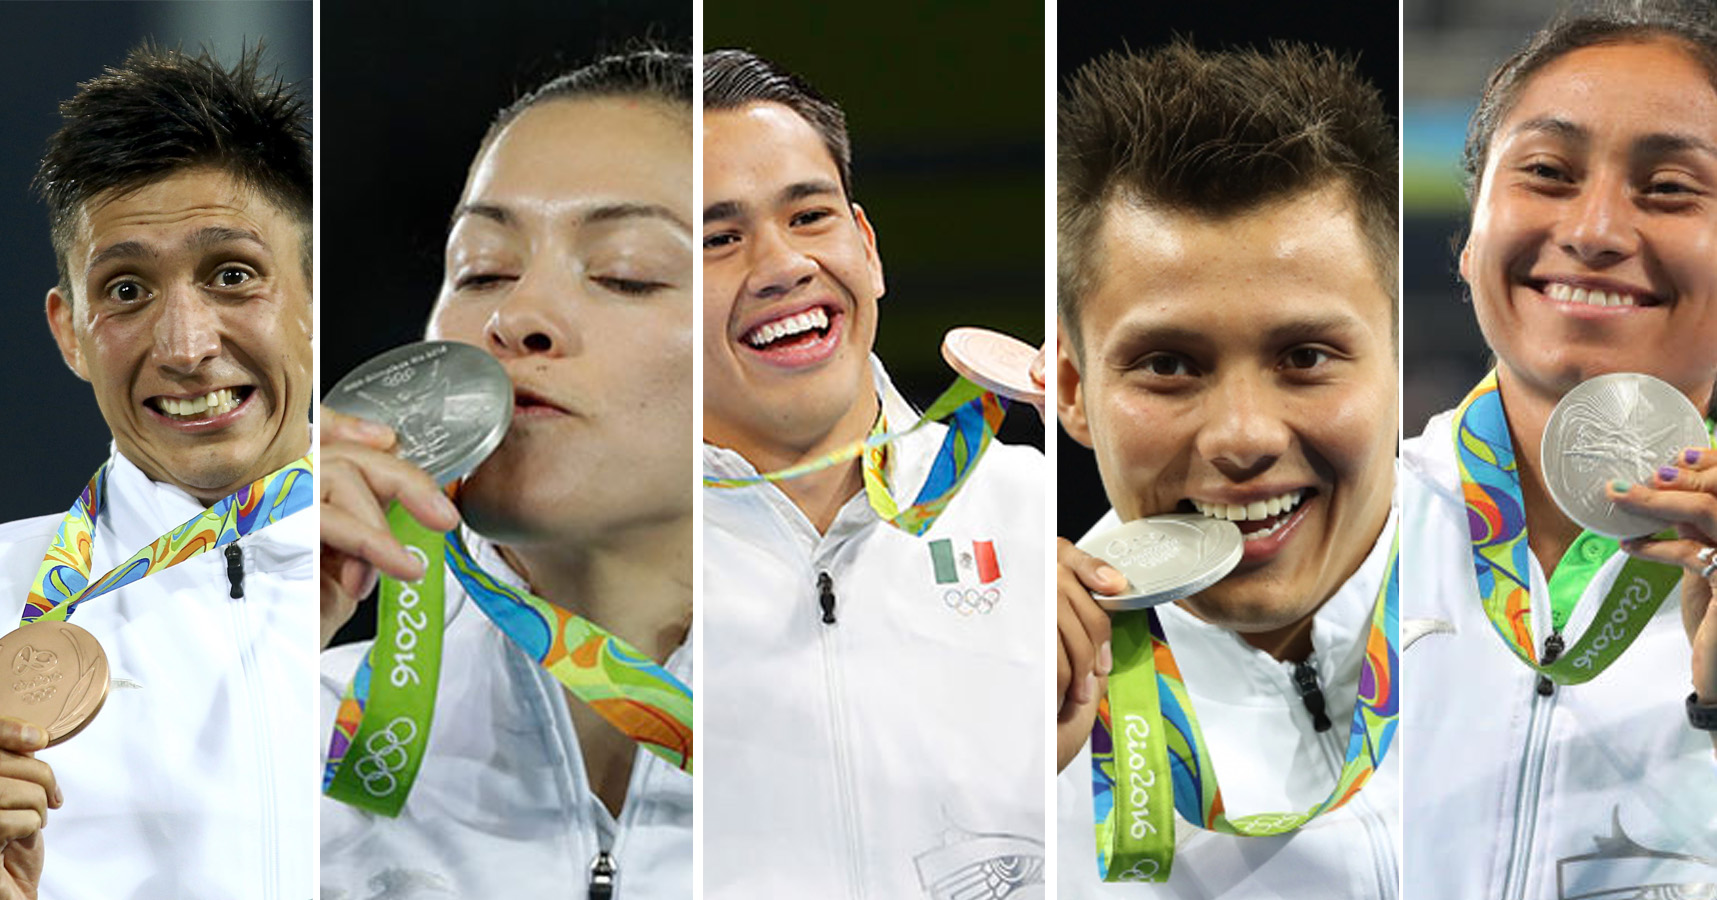  Mexicanos ganadores en Rio, pagarán impuestos por medallas